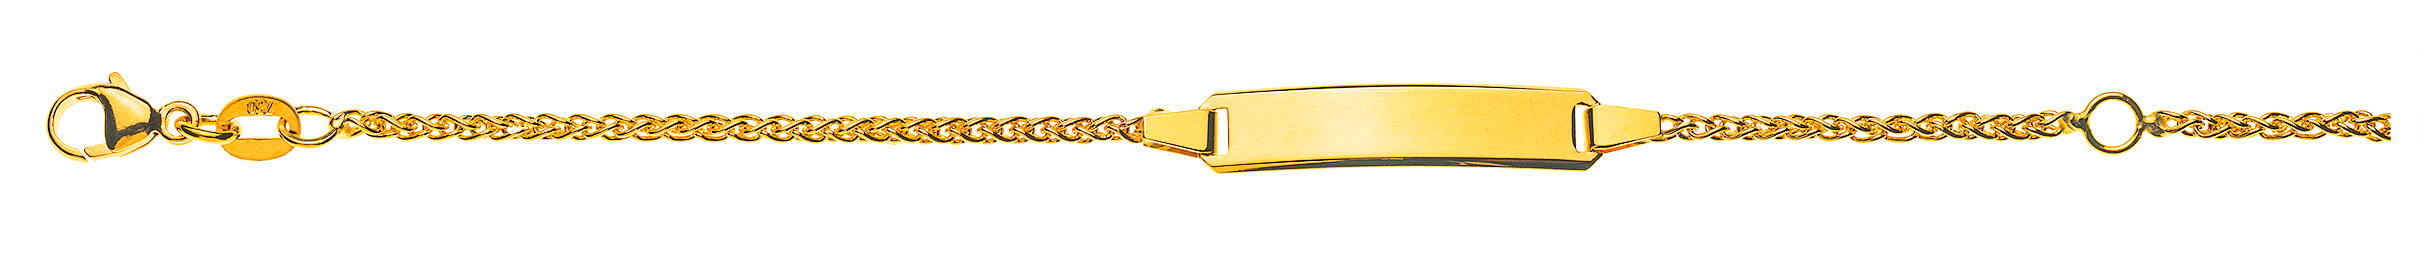 AURONOS Élégance ID bracelet 14k yellow gold plait chain 14cm